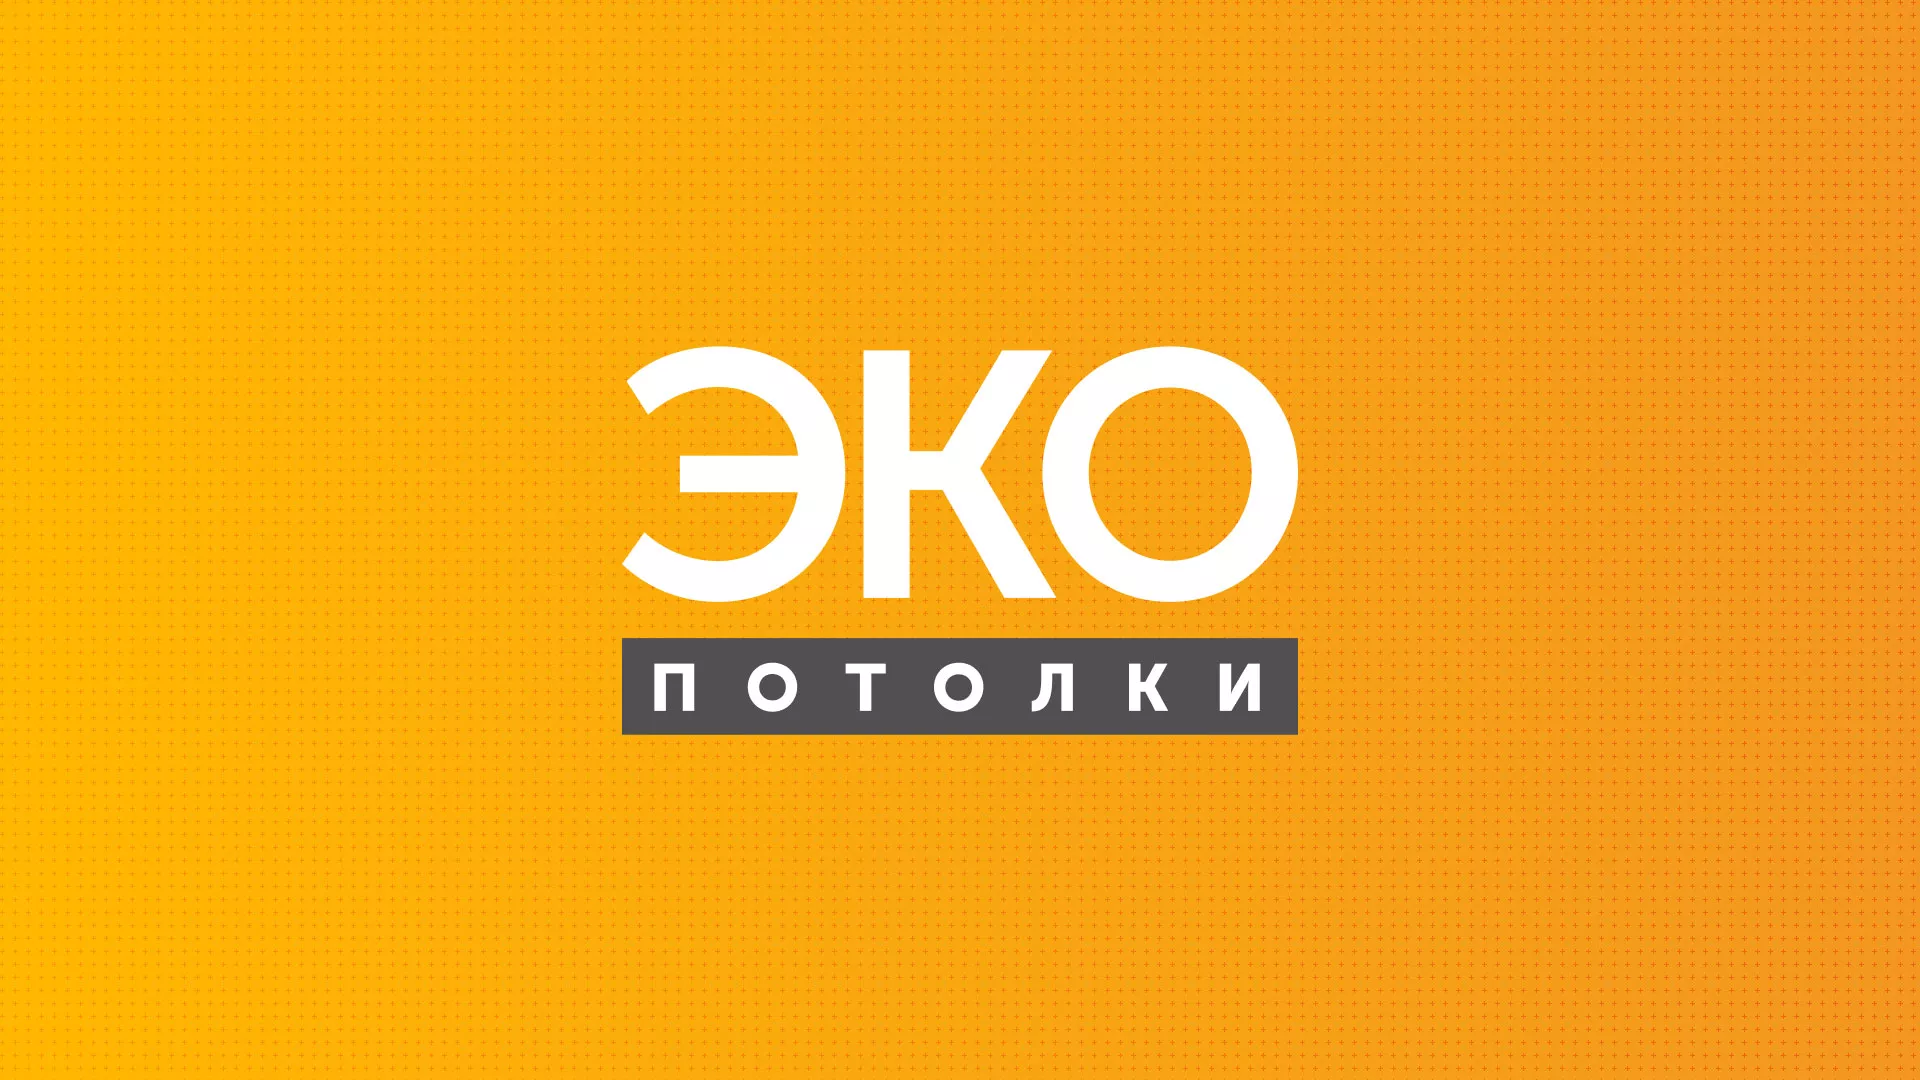 Разработка сайта по натяжным потолкам «Эко Потолки» в Пушкино